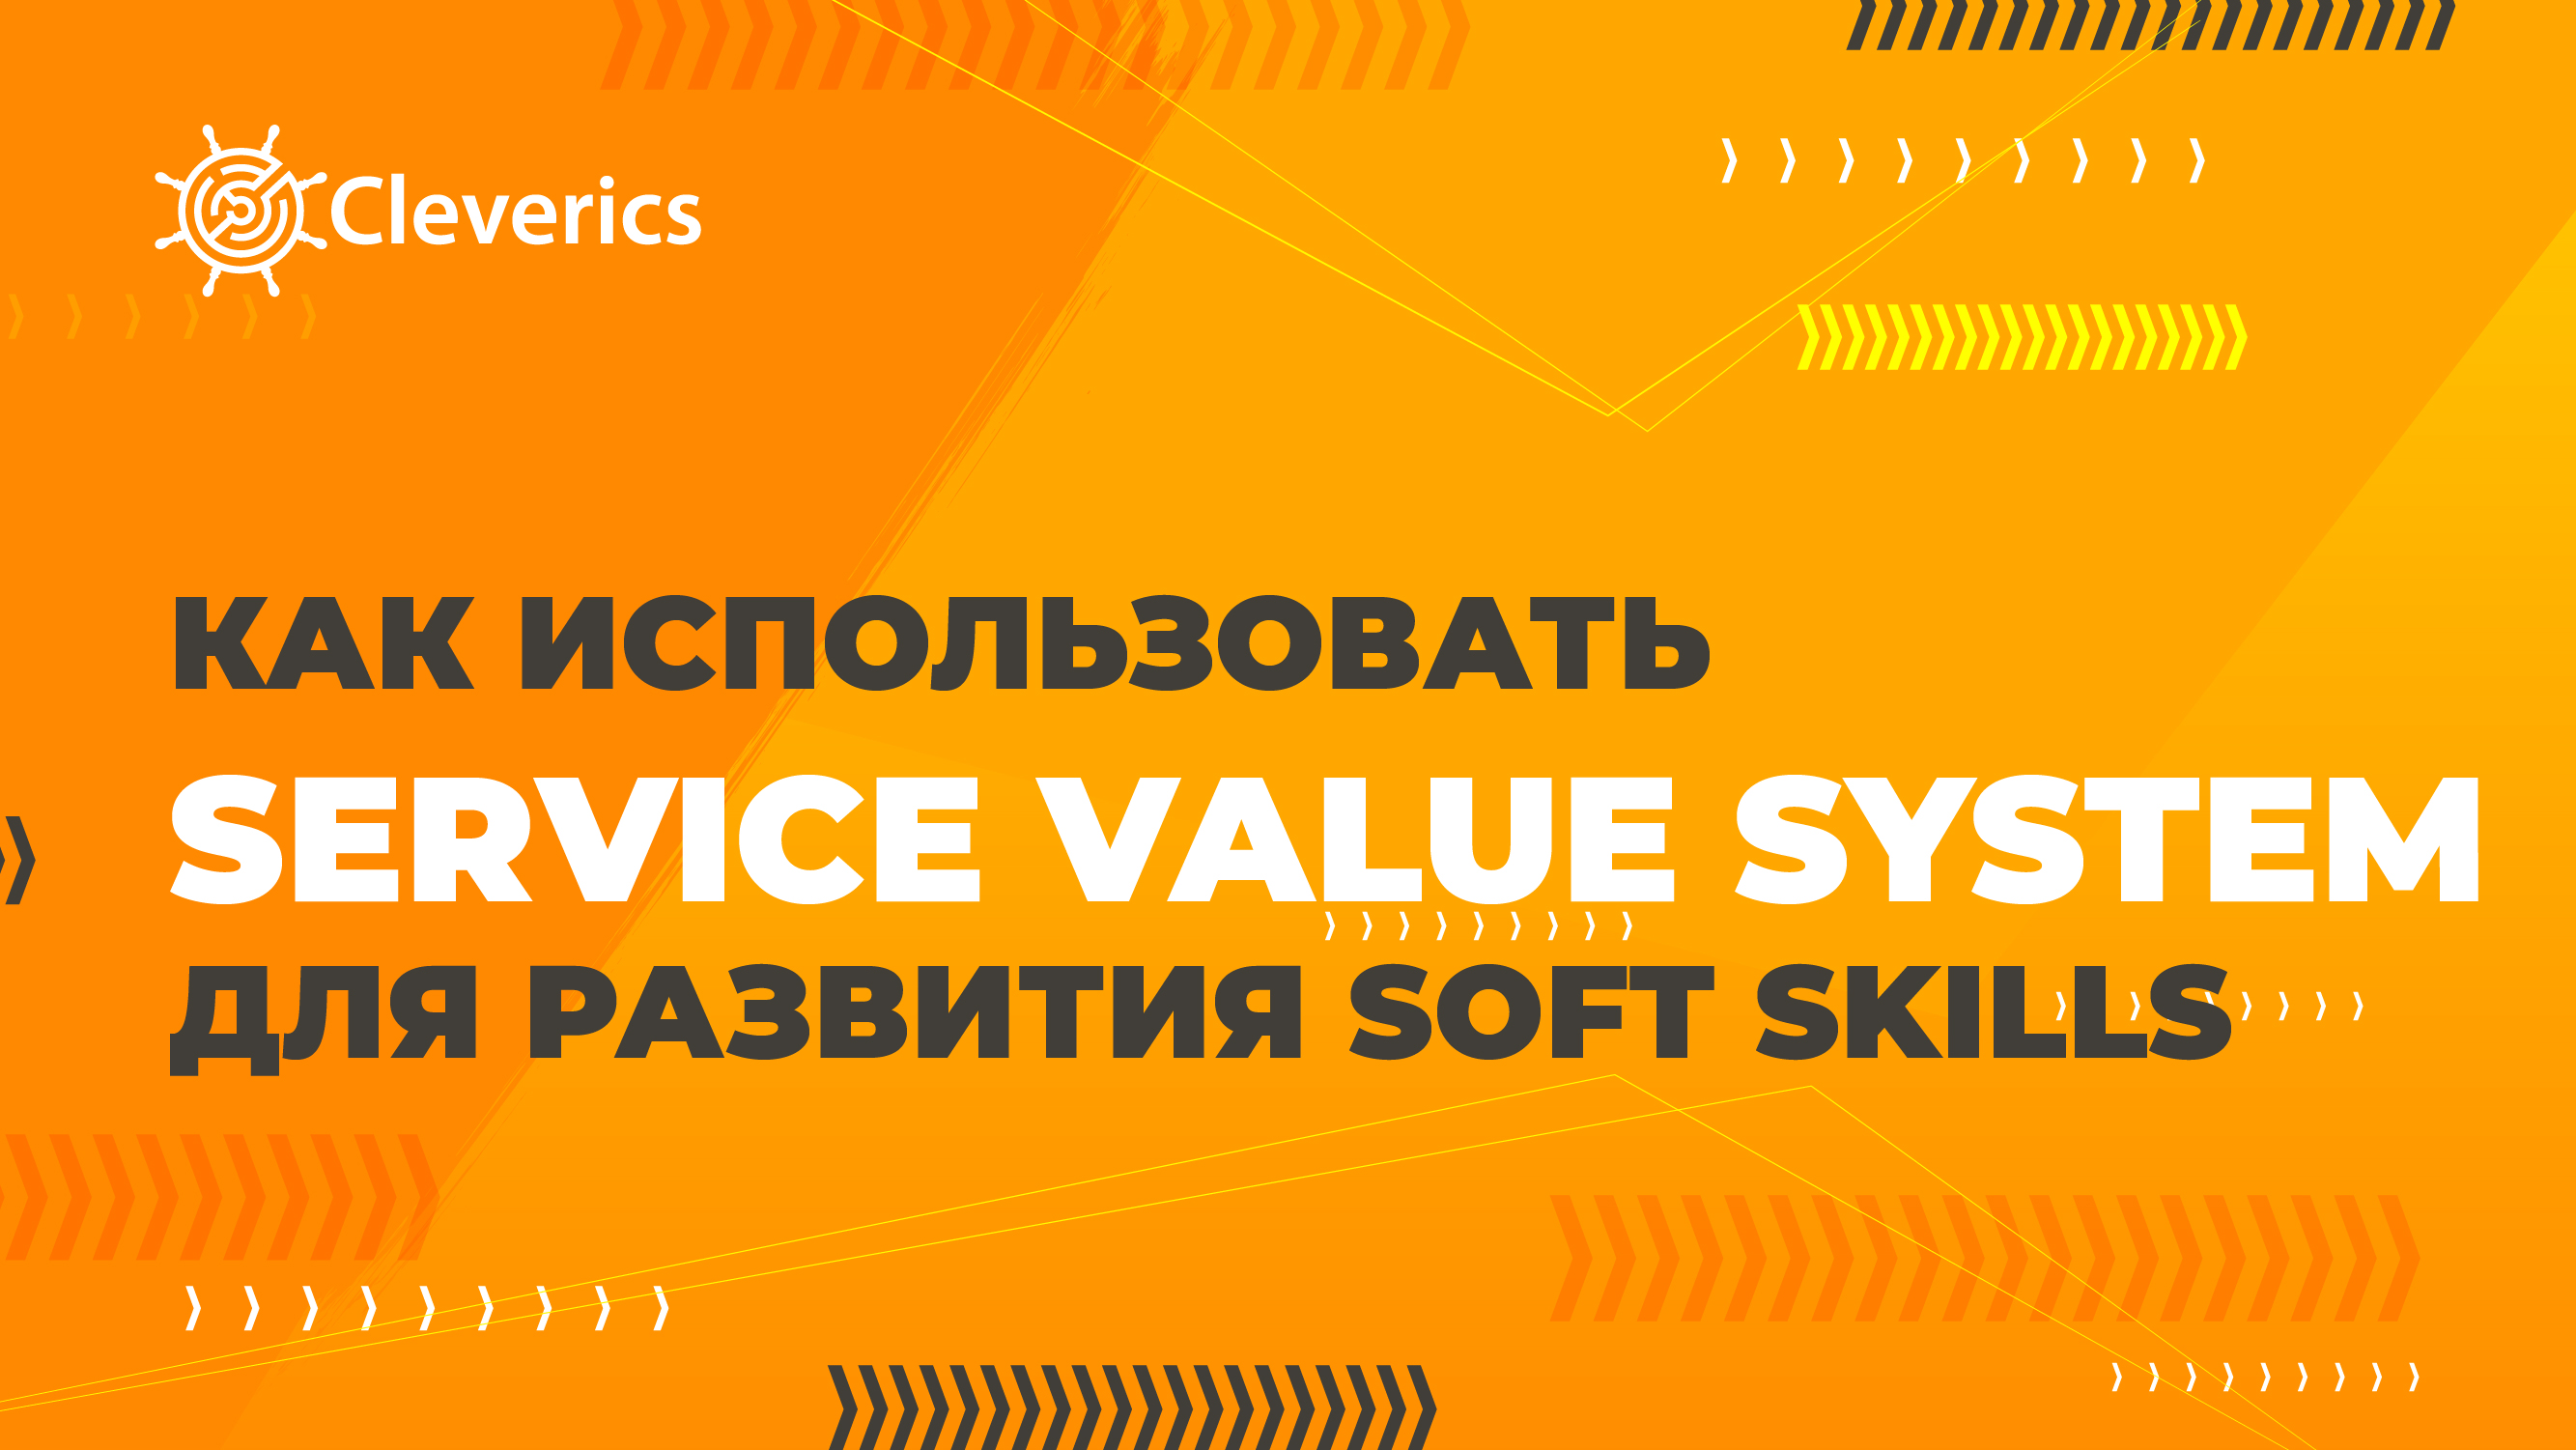 Как использовать Service value system для развития SOFT SKILLS